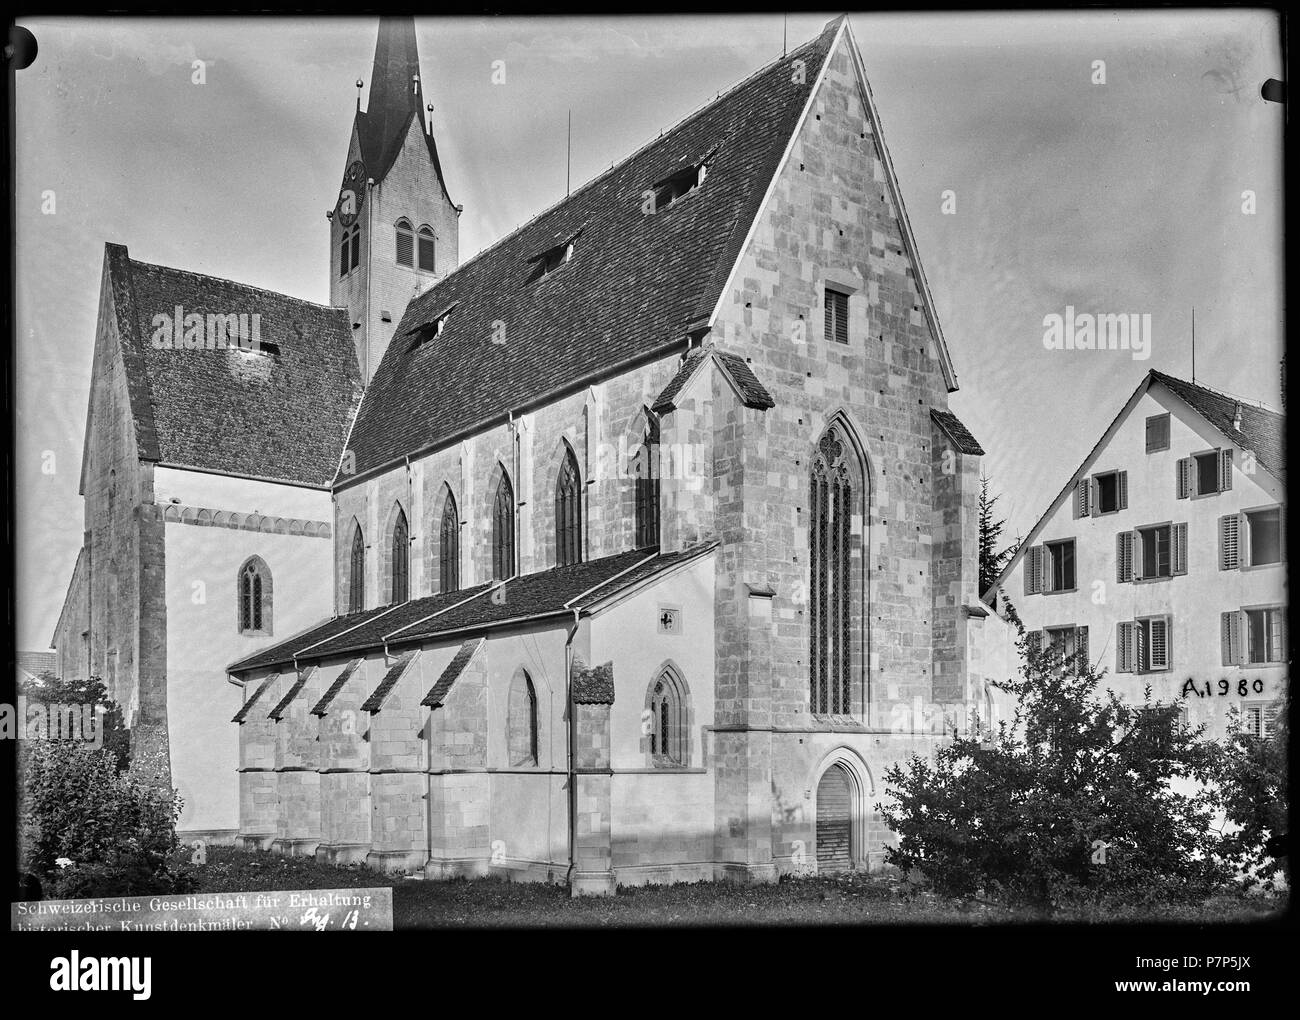 73 CH-NB - Kappel, Klosterkirche, vue partielle extérieure - Collection Max van Berchem - EAD-6593 Stock Photo